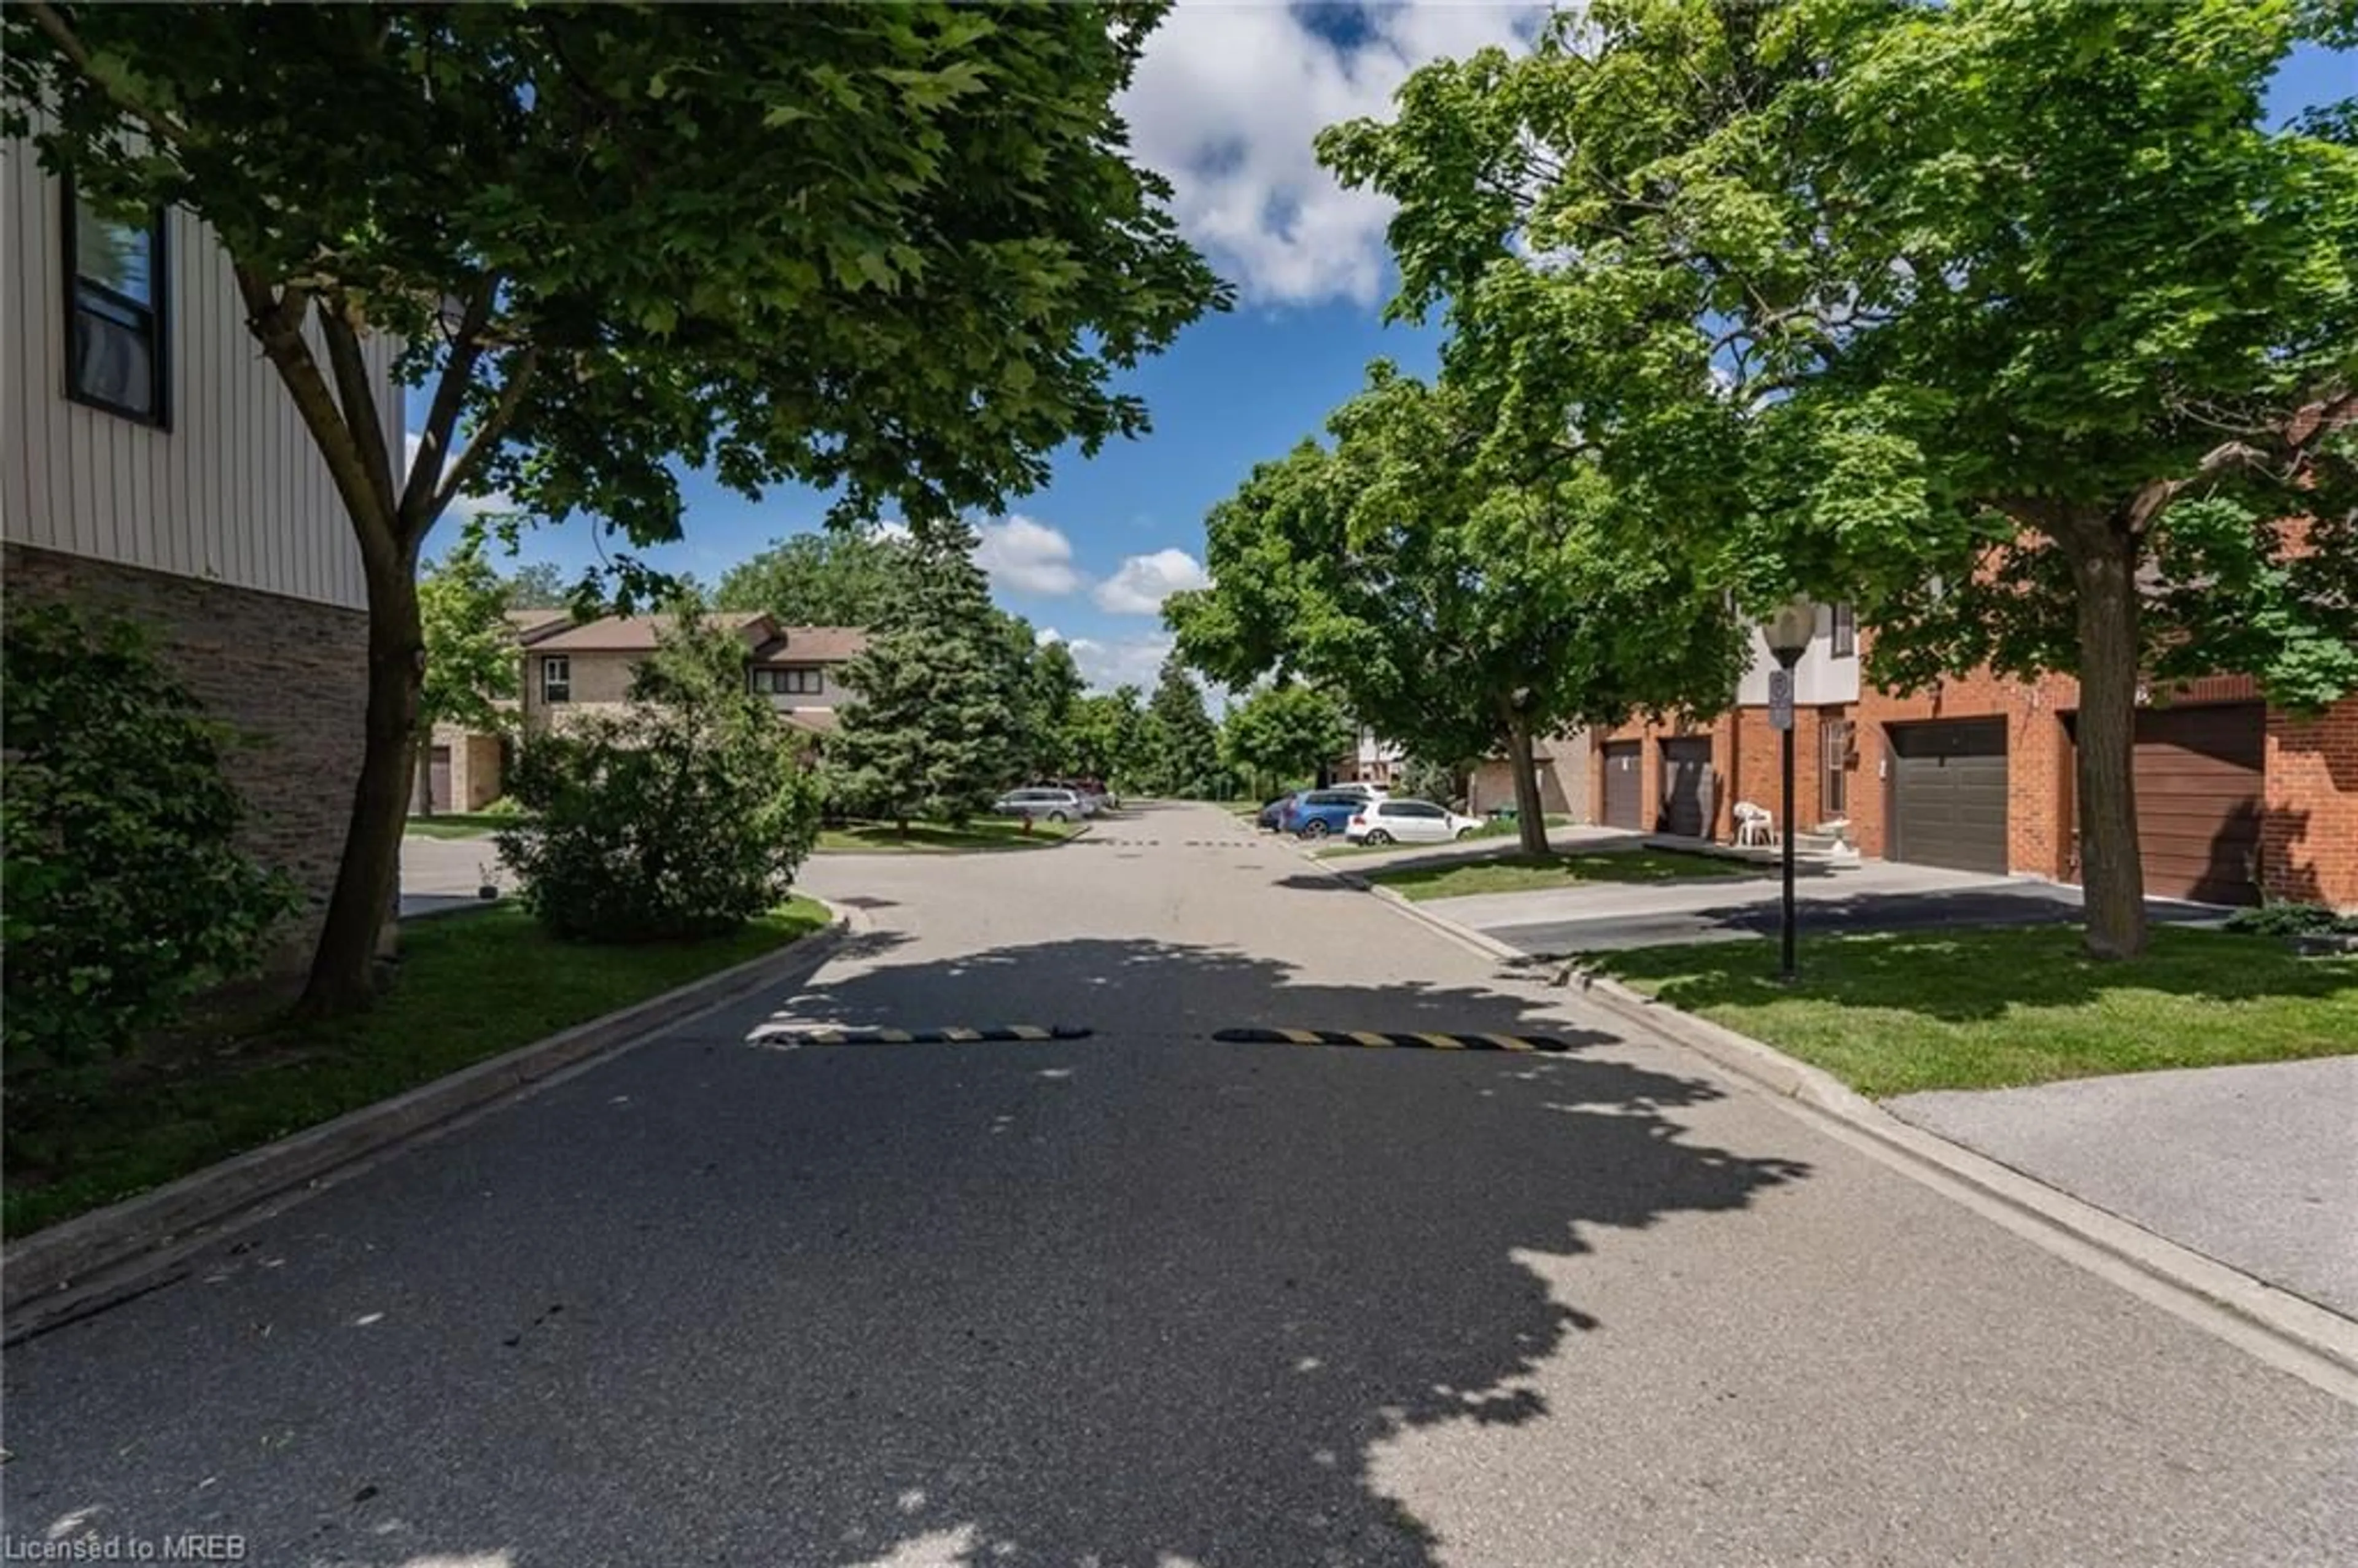 Street view for 88 Dawson Cres, Peel Ontario L6V 3M6